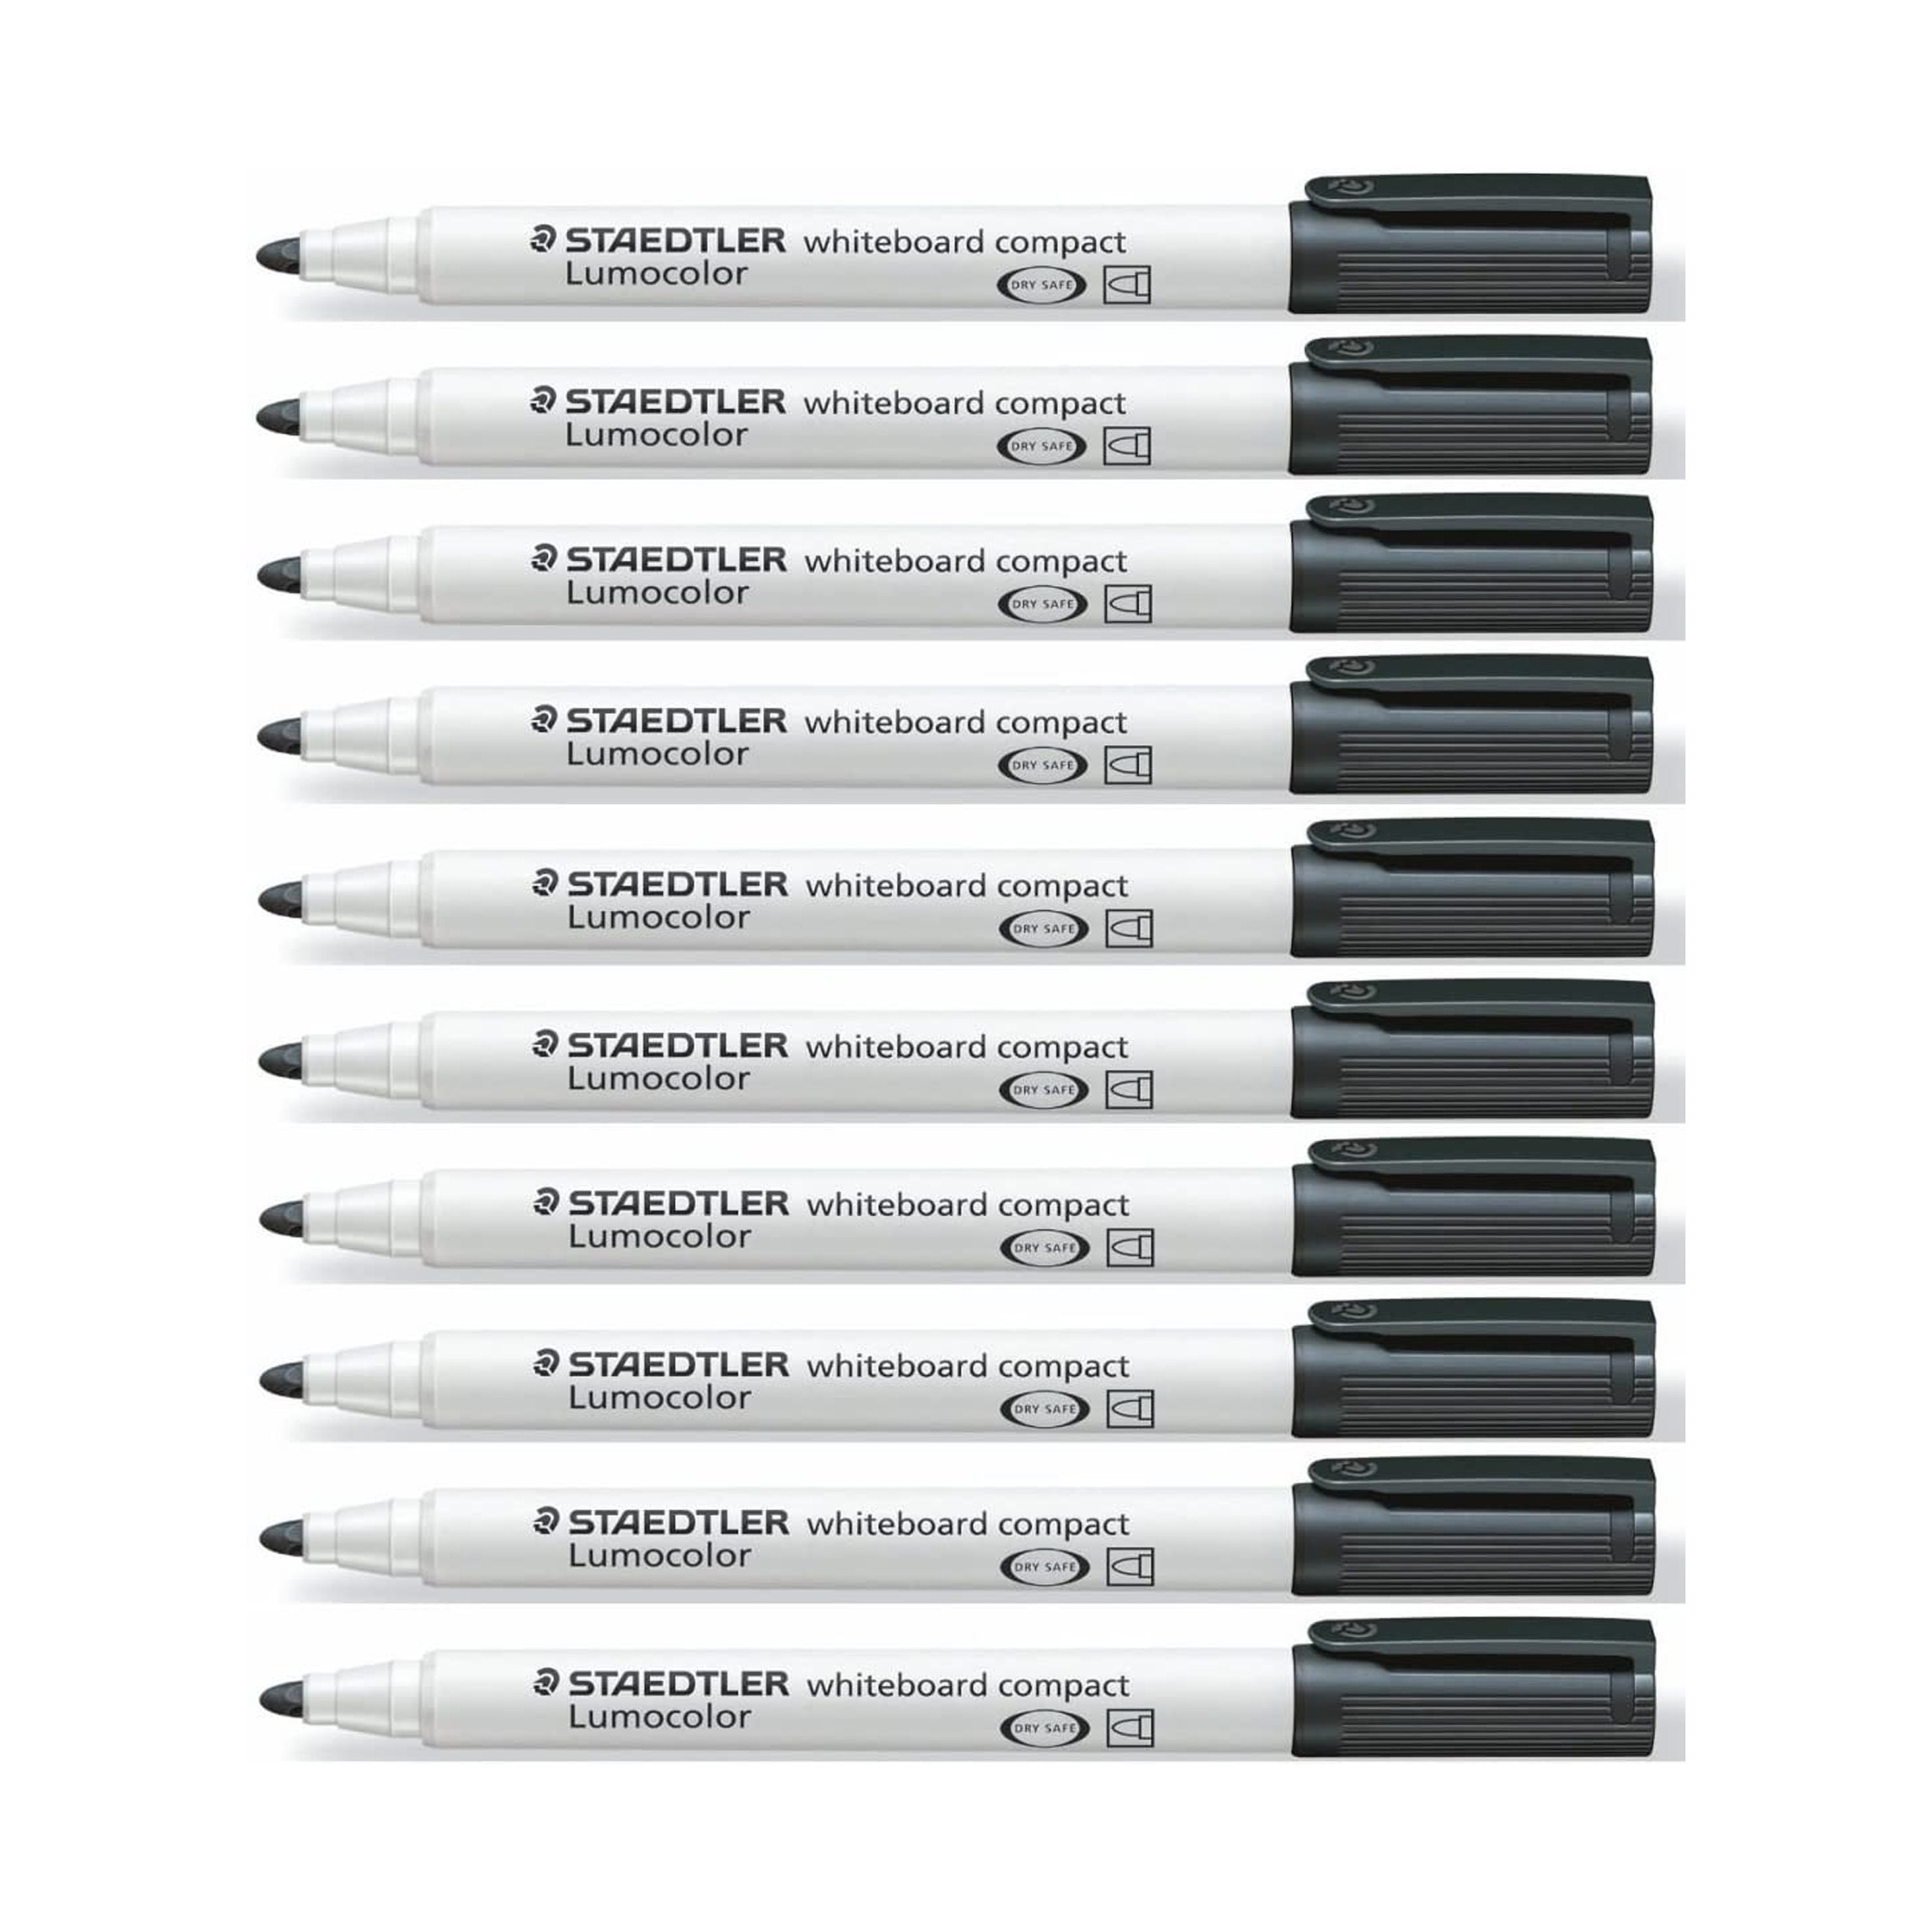 3 X Pentel S570 Fineliner Pen Ultra Fine 0.6mm Nib 100% Recyclable